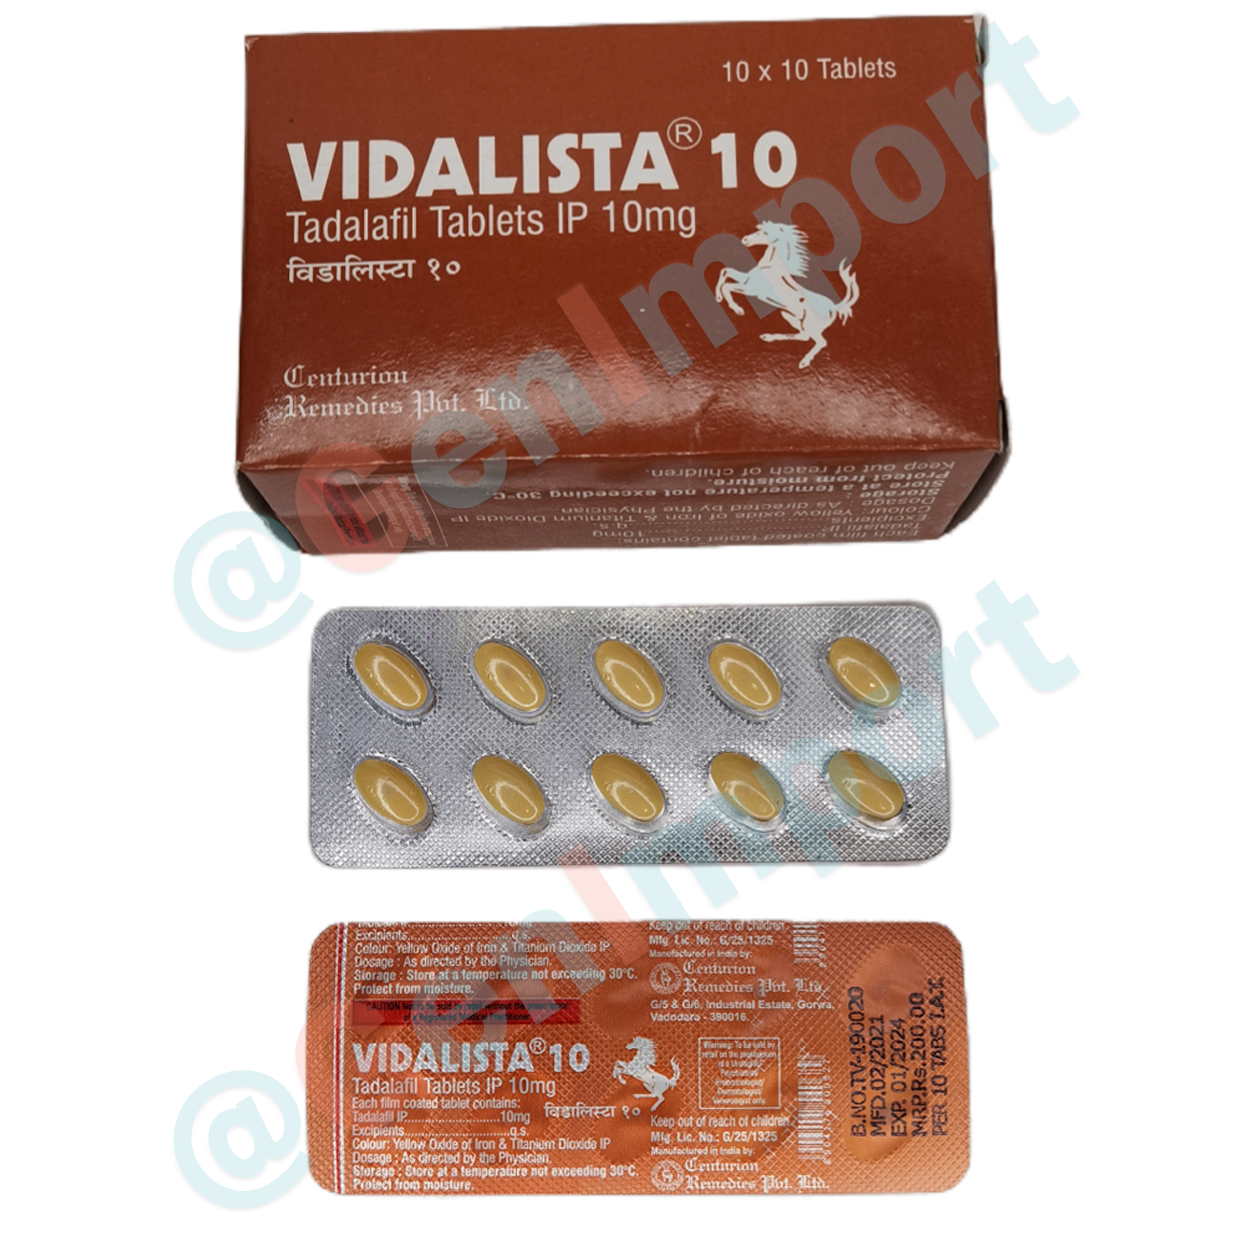 Vidalista Видалиста 10, аналог сиалиса (тадалафил, tadalafil)